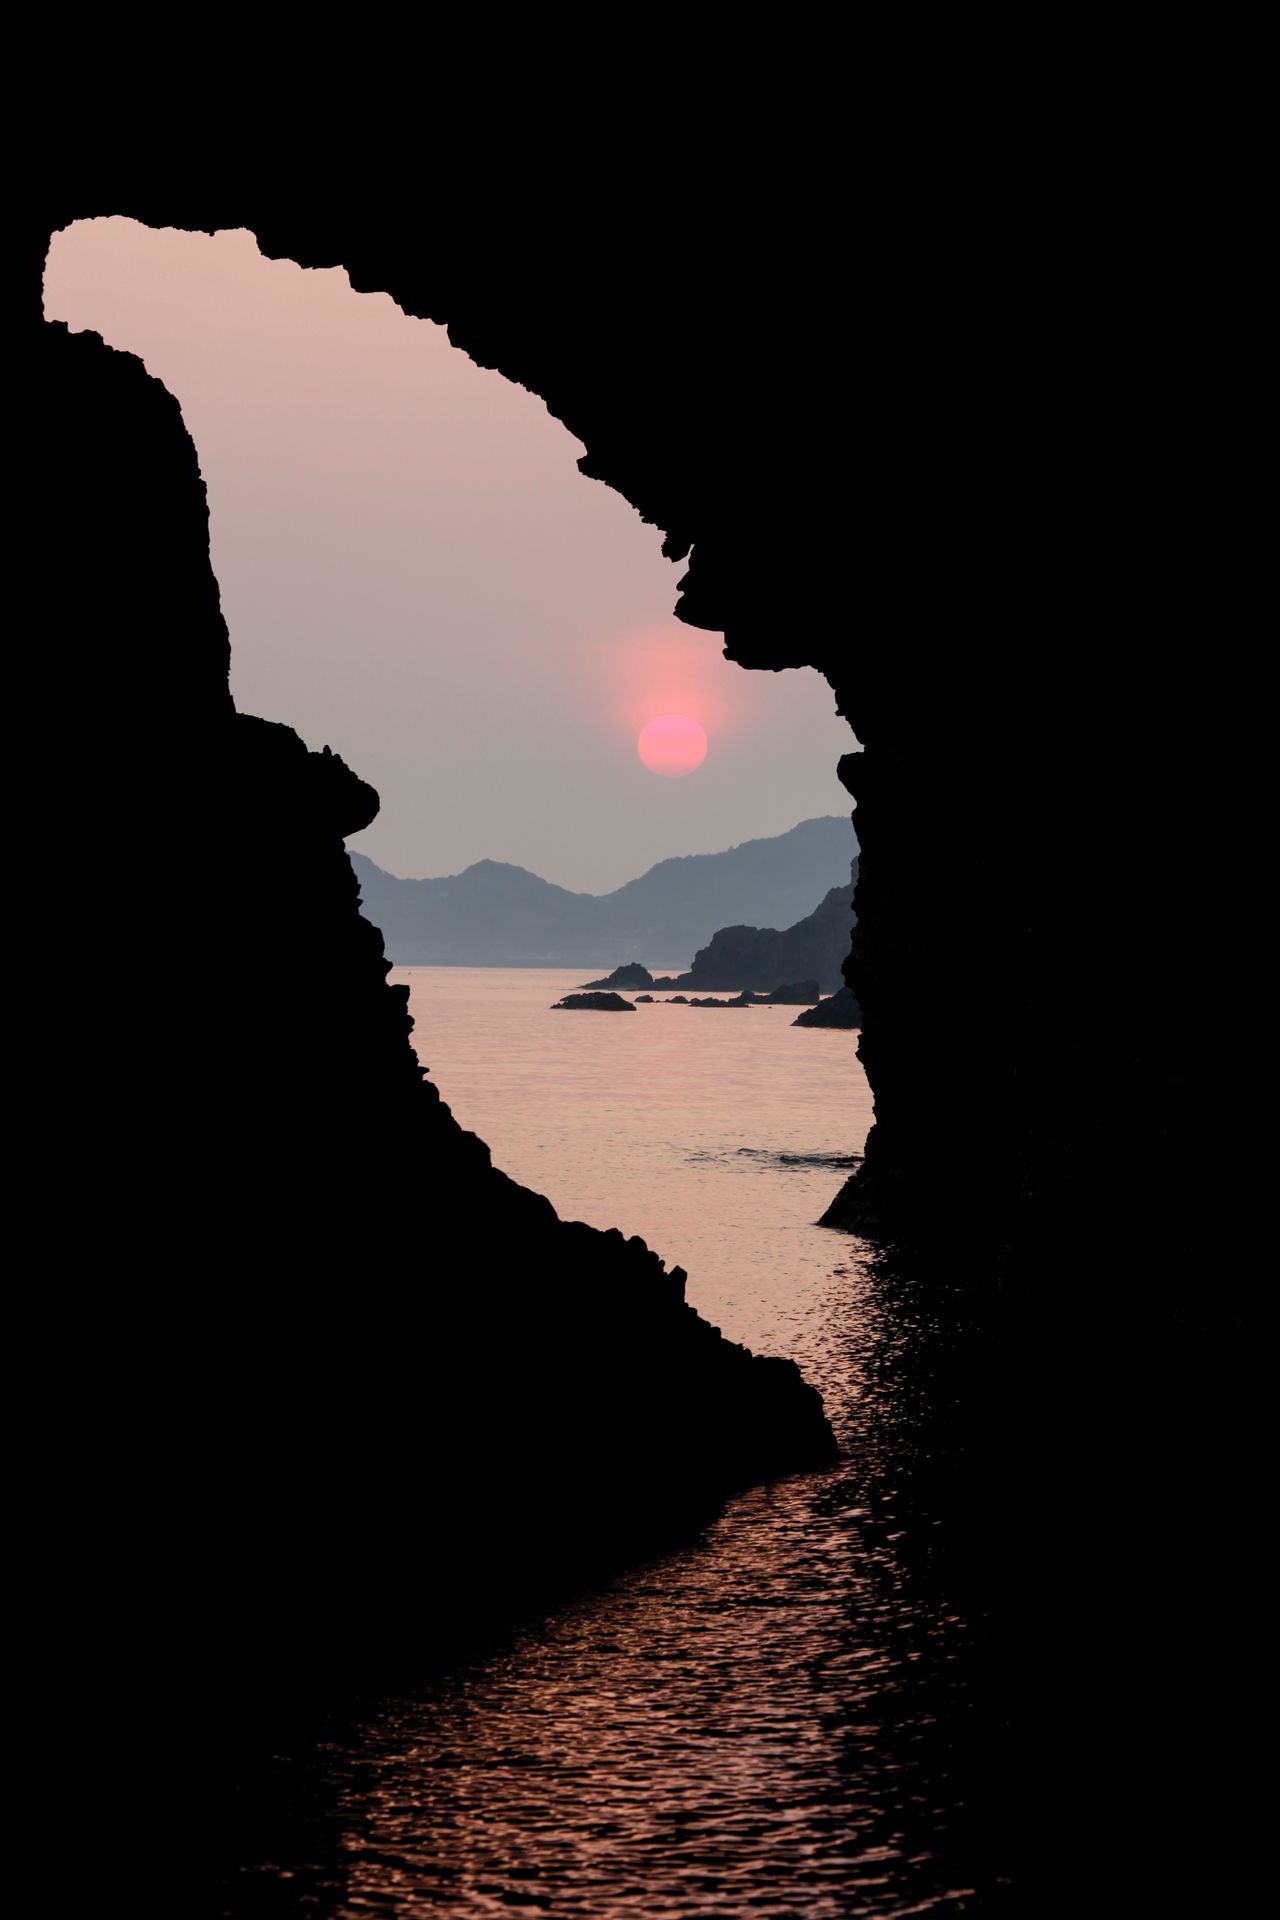 Une ouverture dans la falaise vue d’une des grottes marines de Kaka no Kukedo. D’après la légende, la divinité Sada-no-Ôkami y serait né. Ce lieu est inscrit dans les listes des plus beaux sites naturels et des monuments naturels du Japon. Les promenades en bateau pour admirer le lever du soleil sont très prisées. (Avec l’aimable autorisation de l’office de tourisme de la préfecture de Shimane)